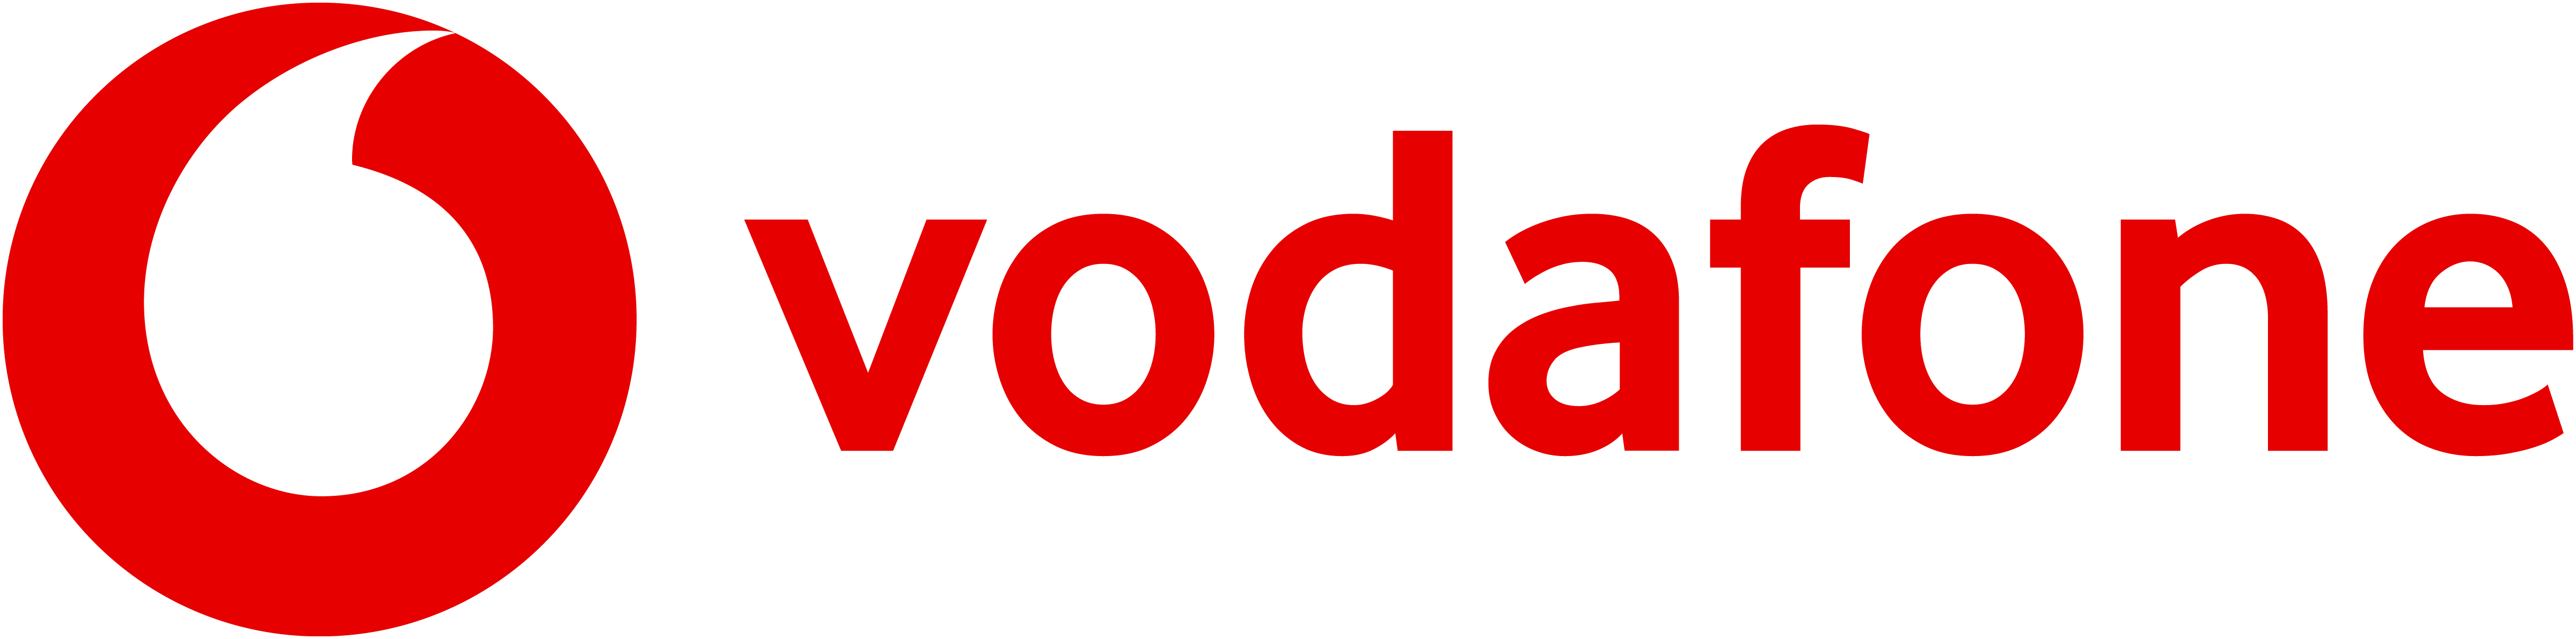 Vodafone VF Logo Horiz RGB RED